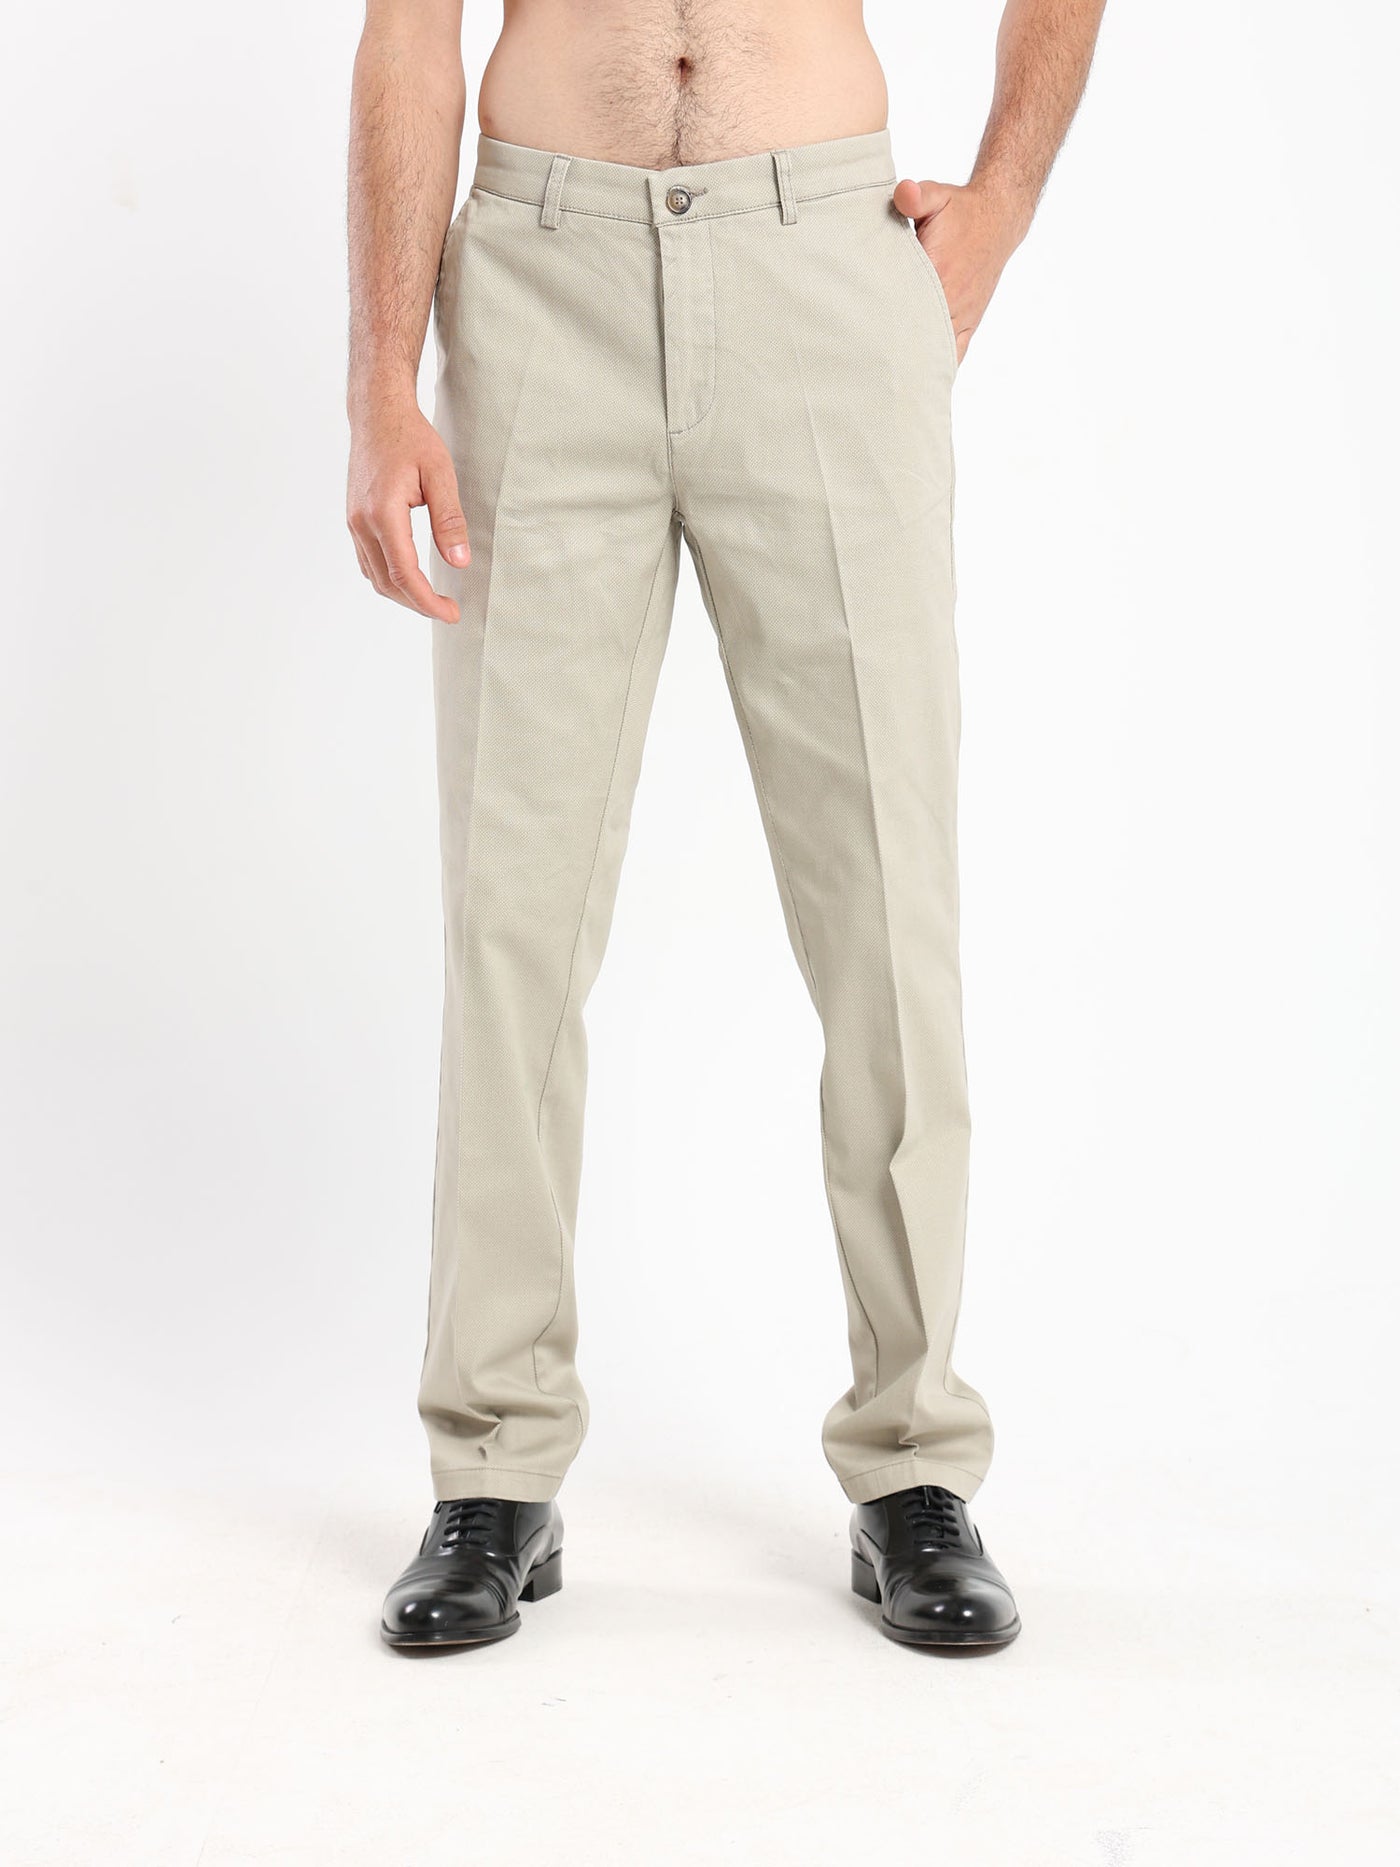 Chino Pants - Modern Fit